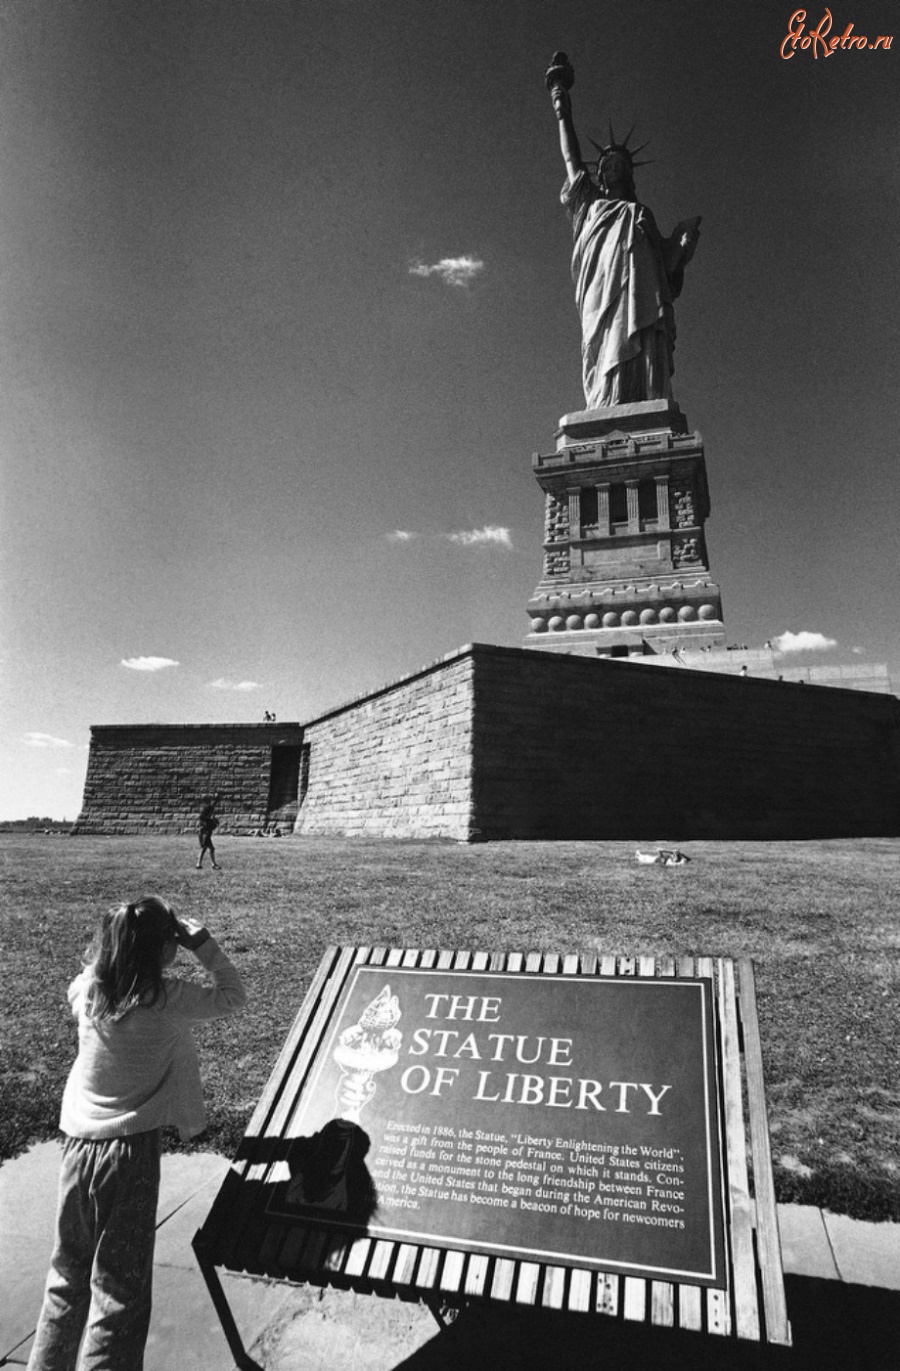 Нью-Йорк - Statue of Liberty США,  Нью-Джерси